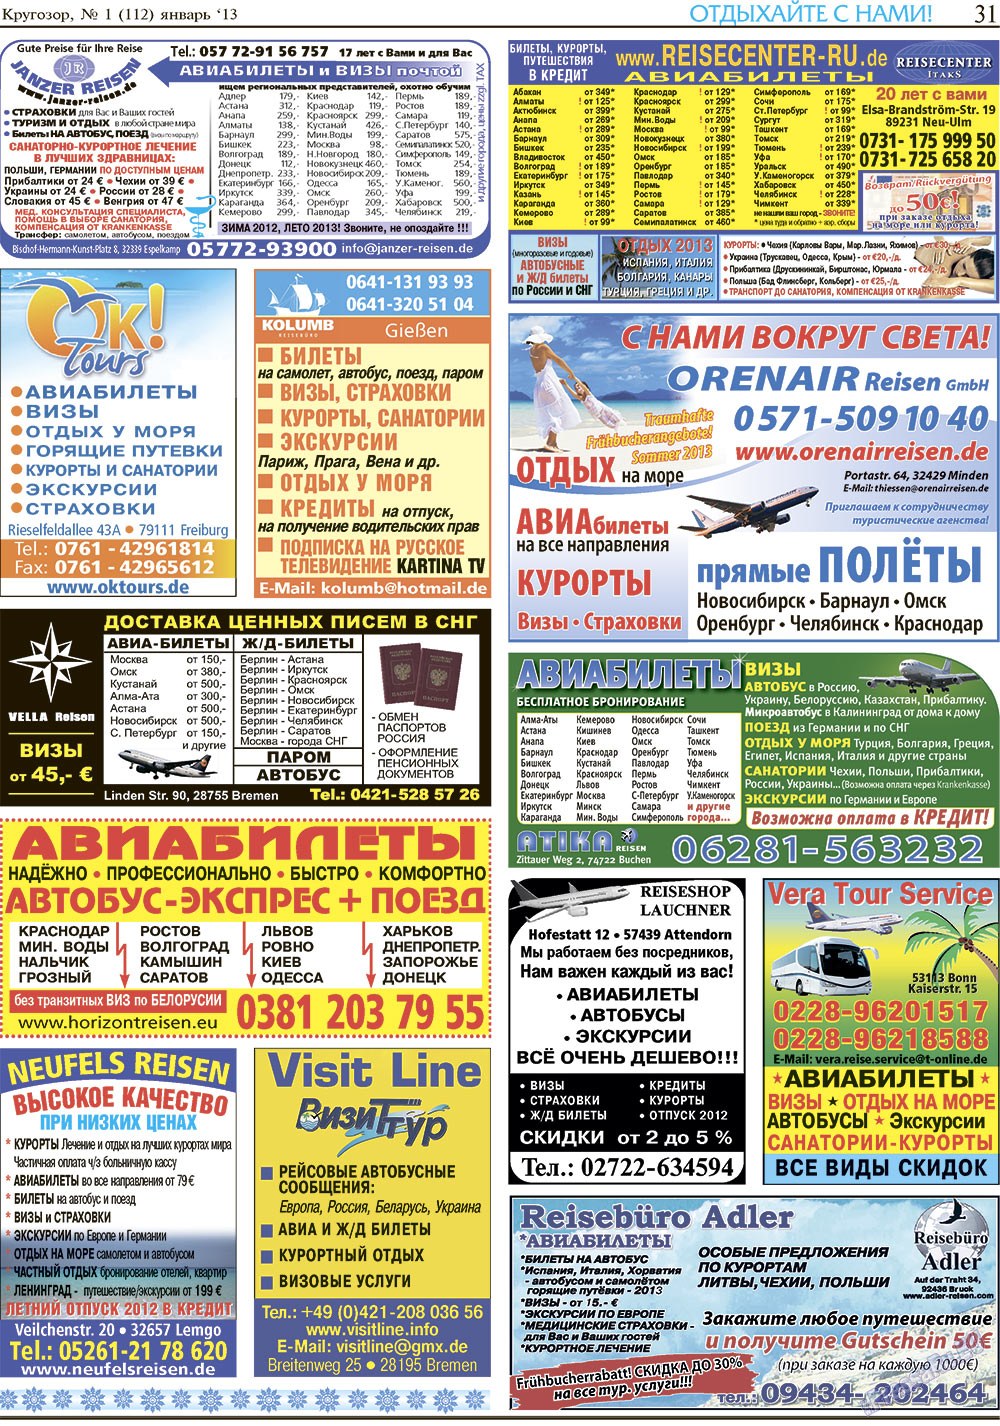 Кругозор, газета. 2013 №1 стр.31